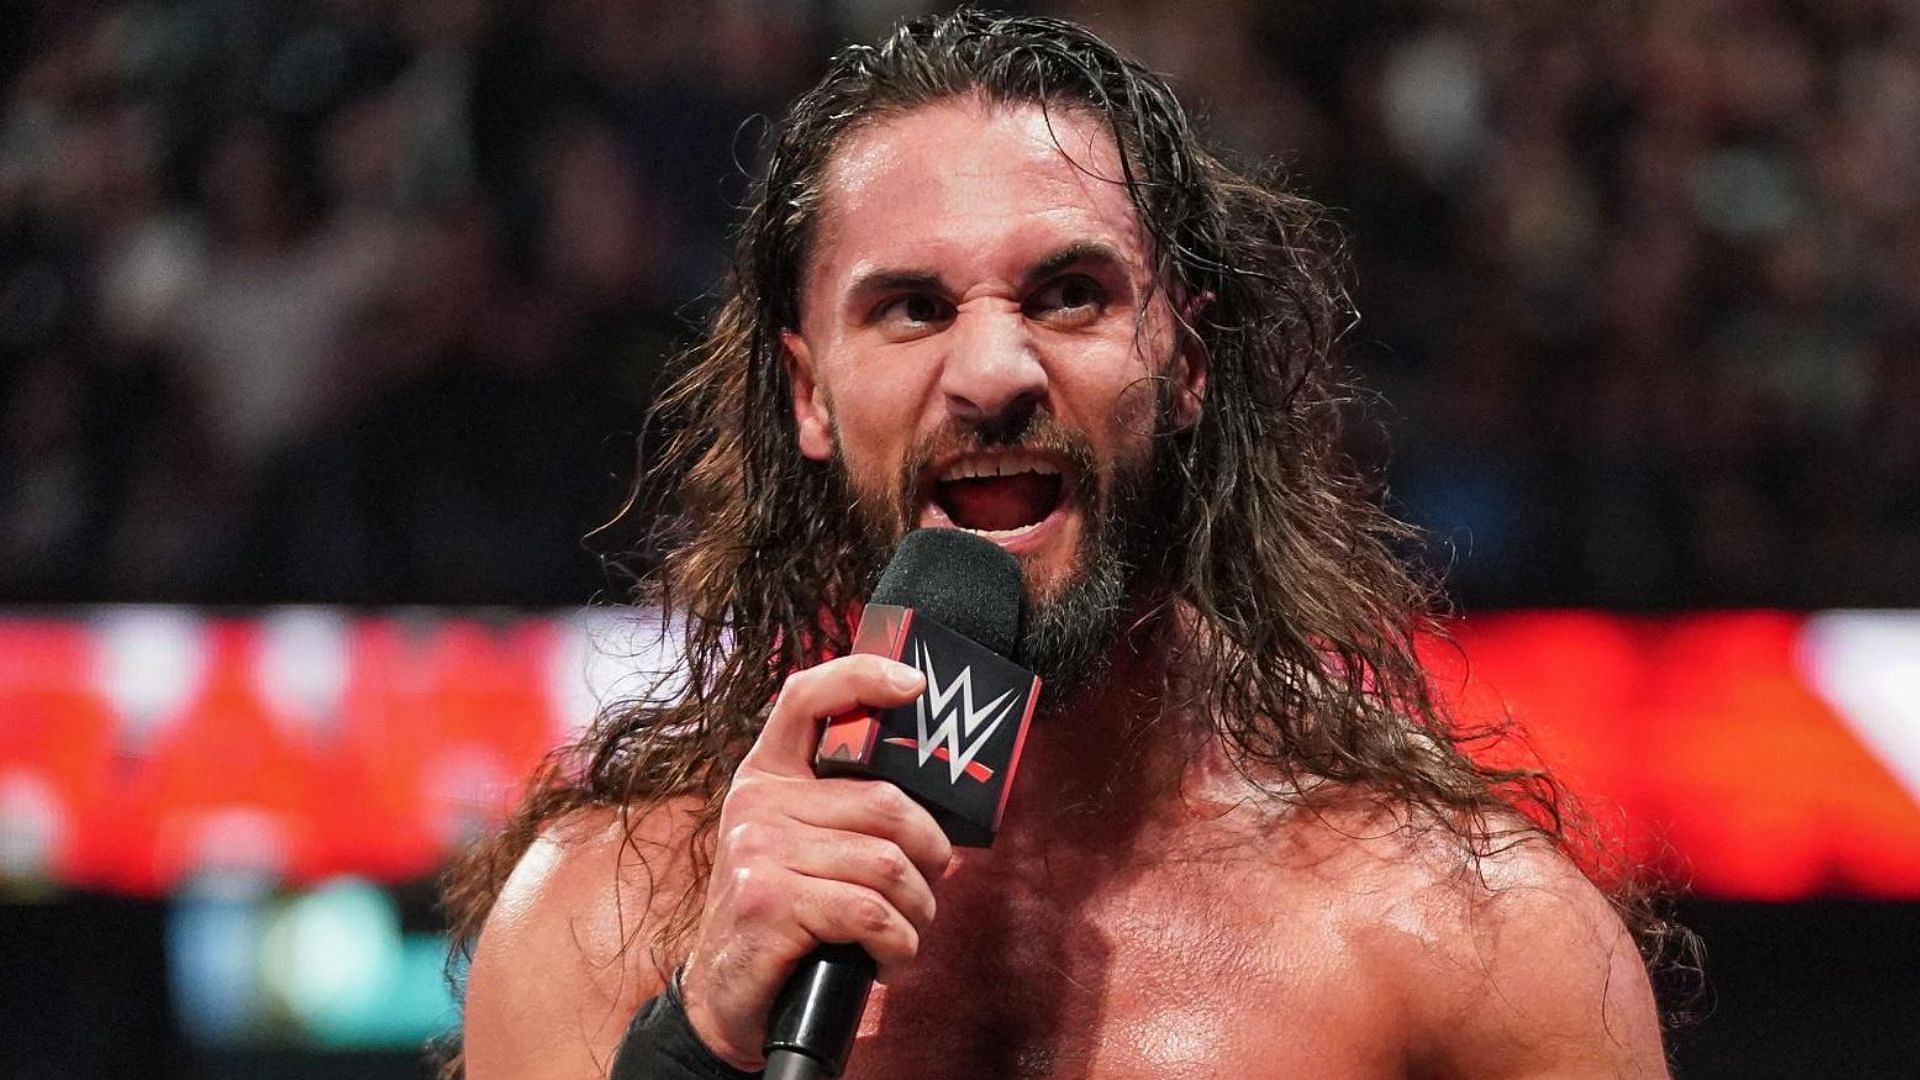 WWE Superstar Seth Rollins cutting a promo on RAW